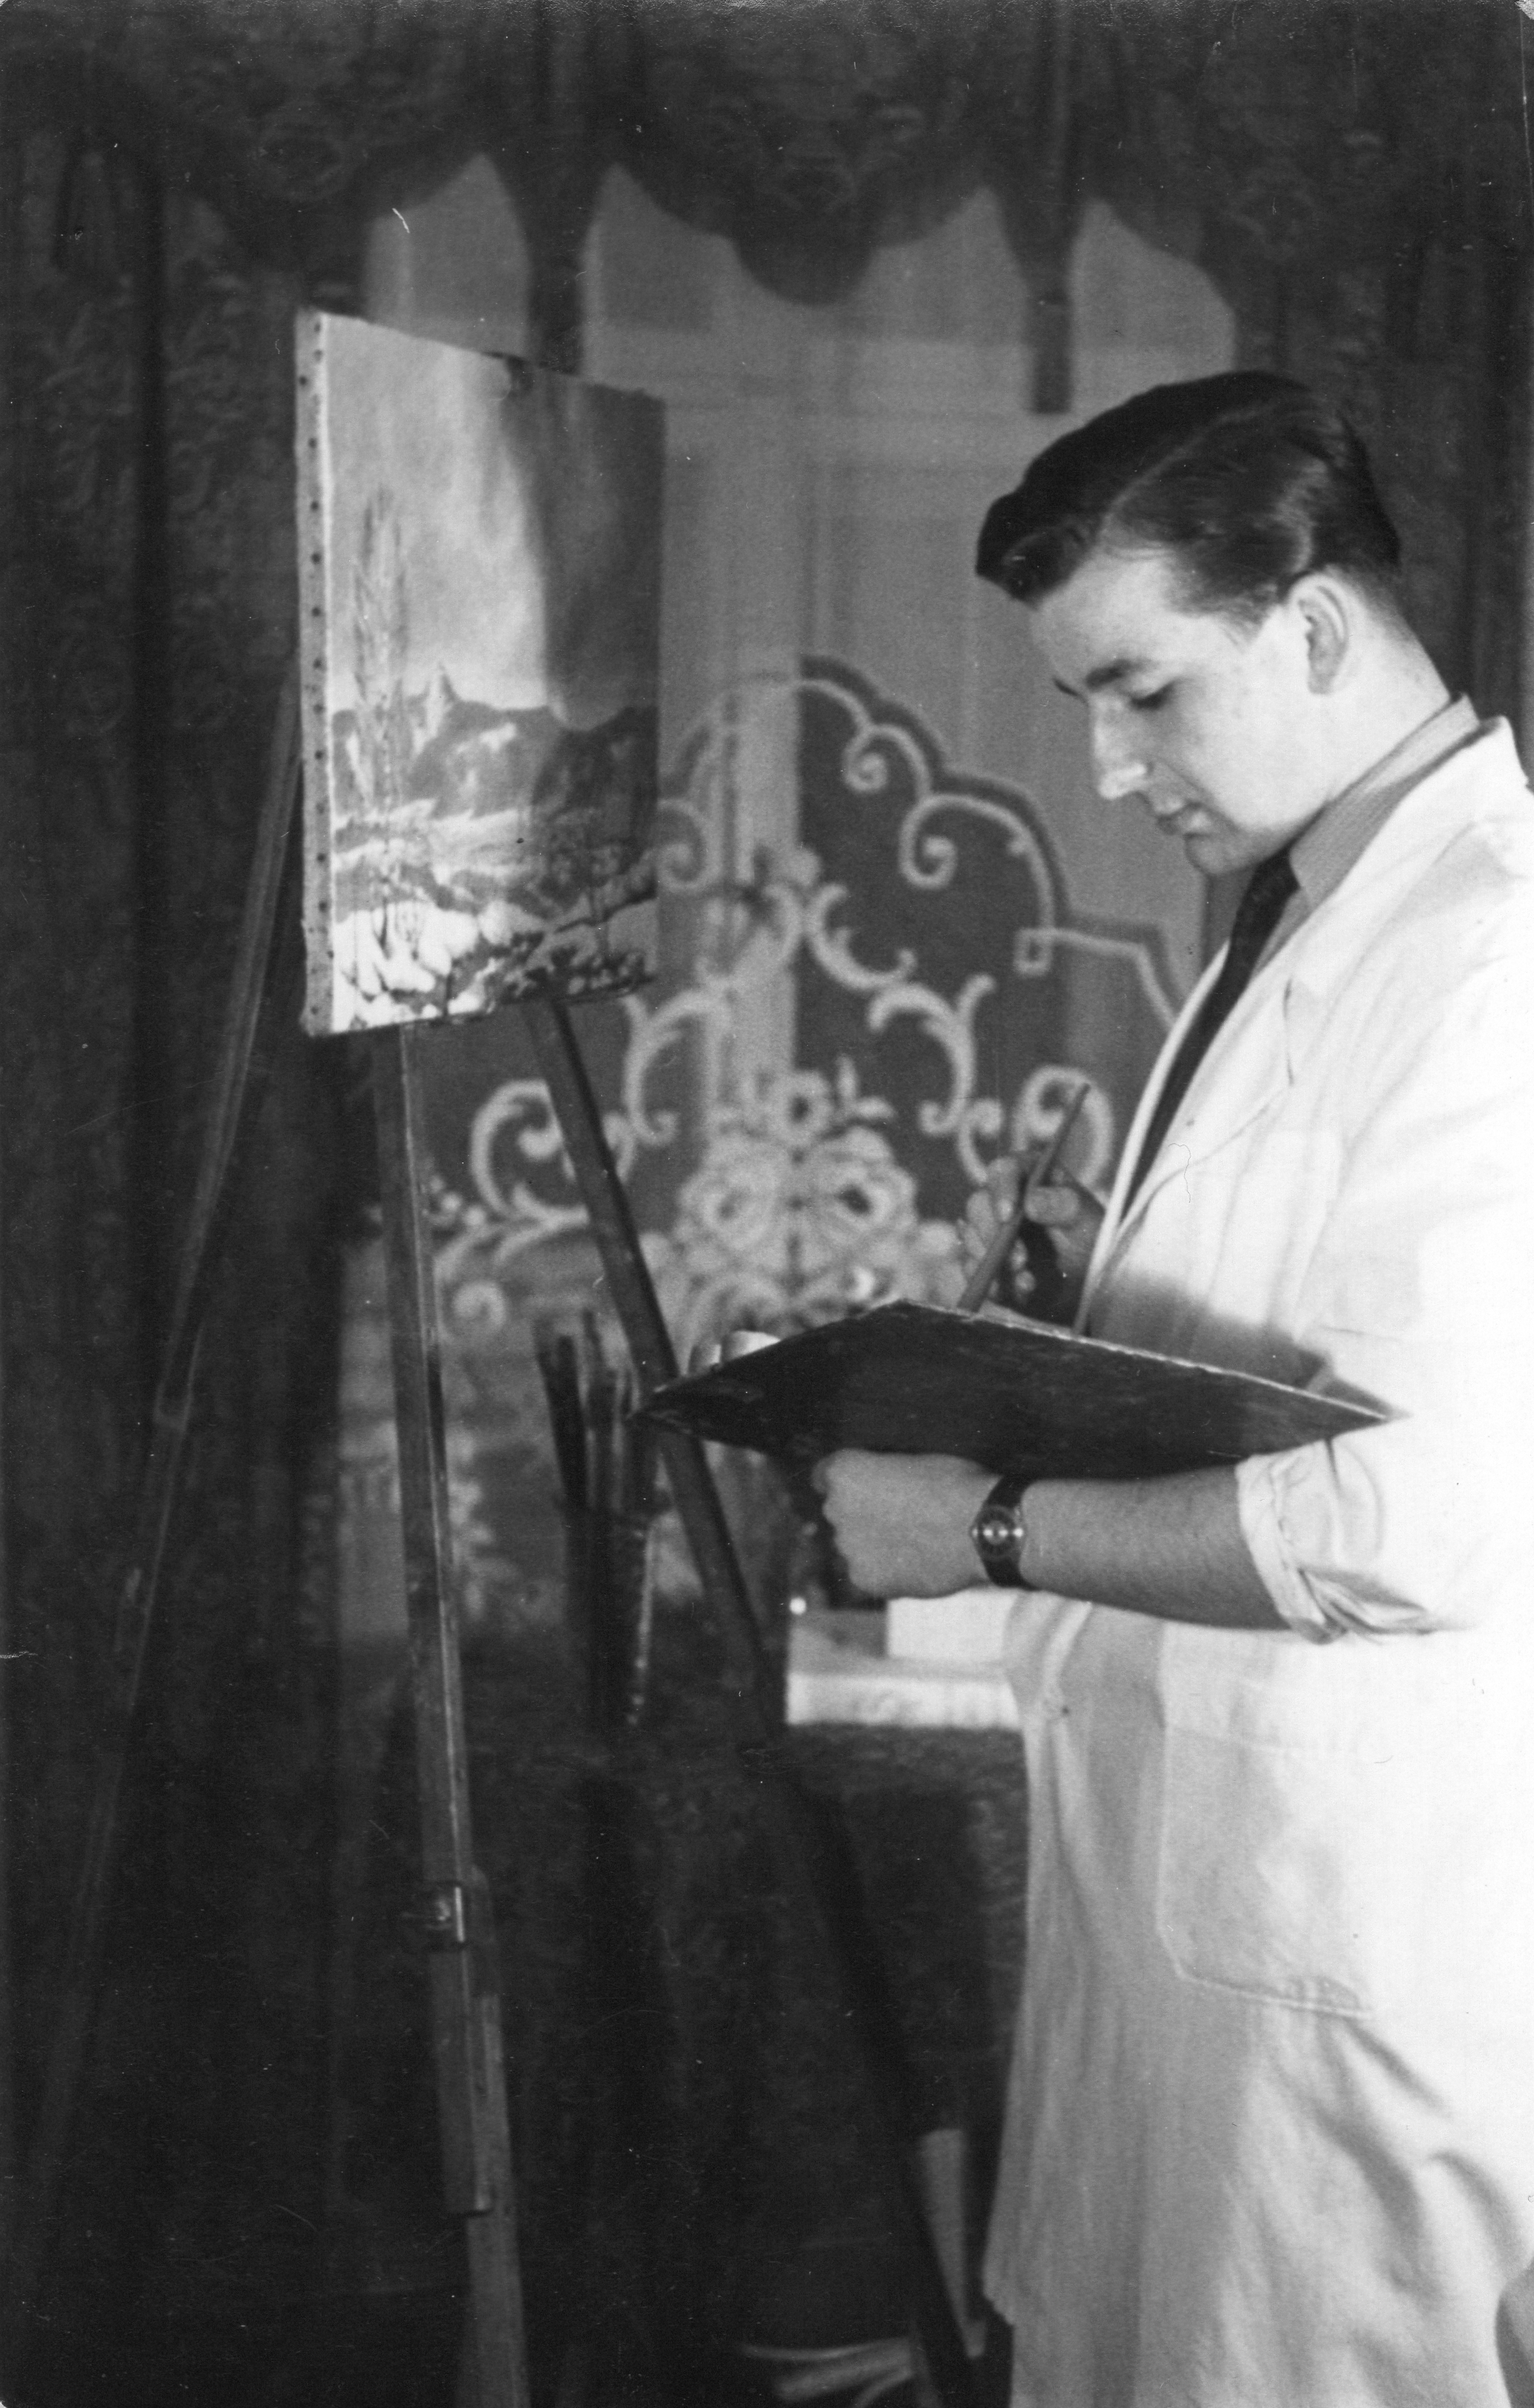 The witness is painting Ještěd, around 1949